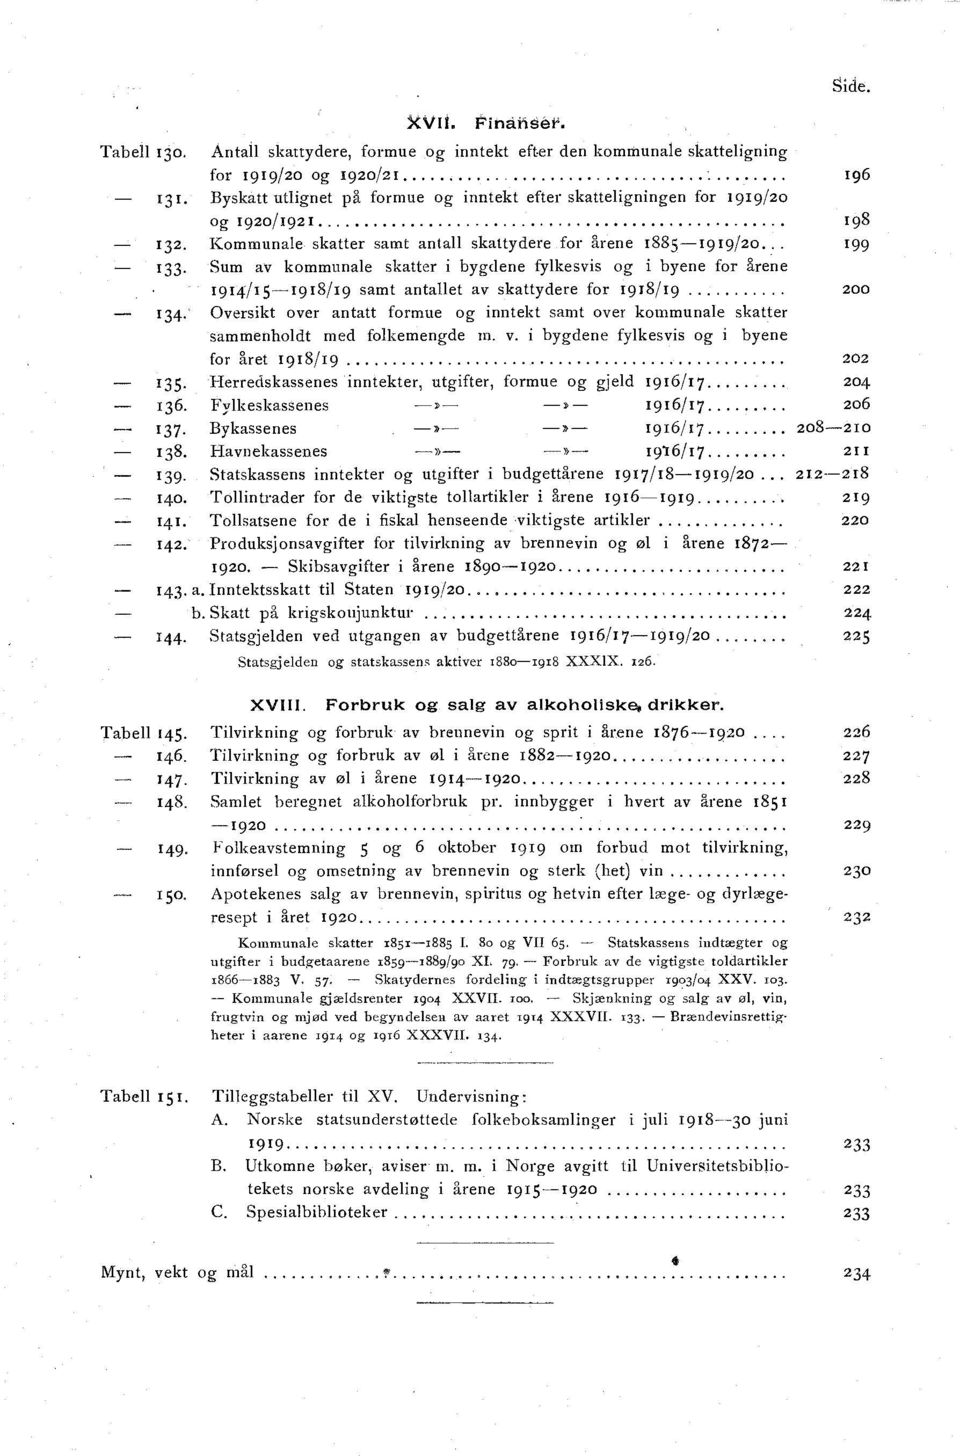 Kommunale skatter samt antall skattydere for årene 1885-1919/20 1 99 133.